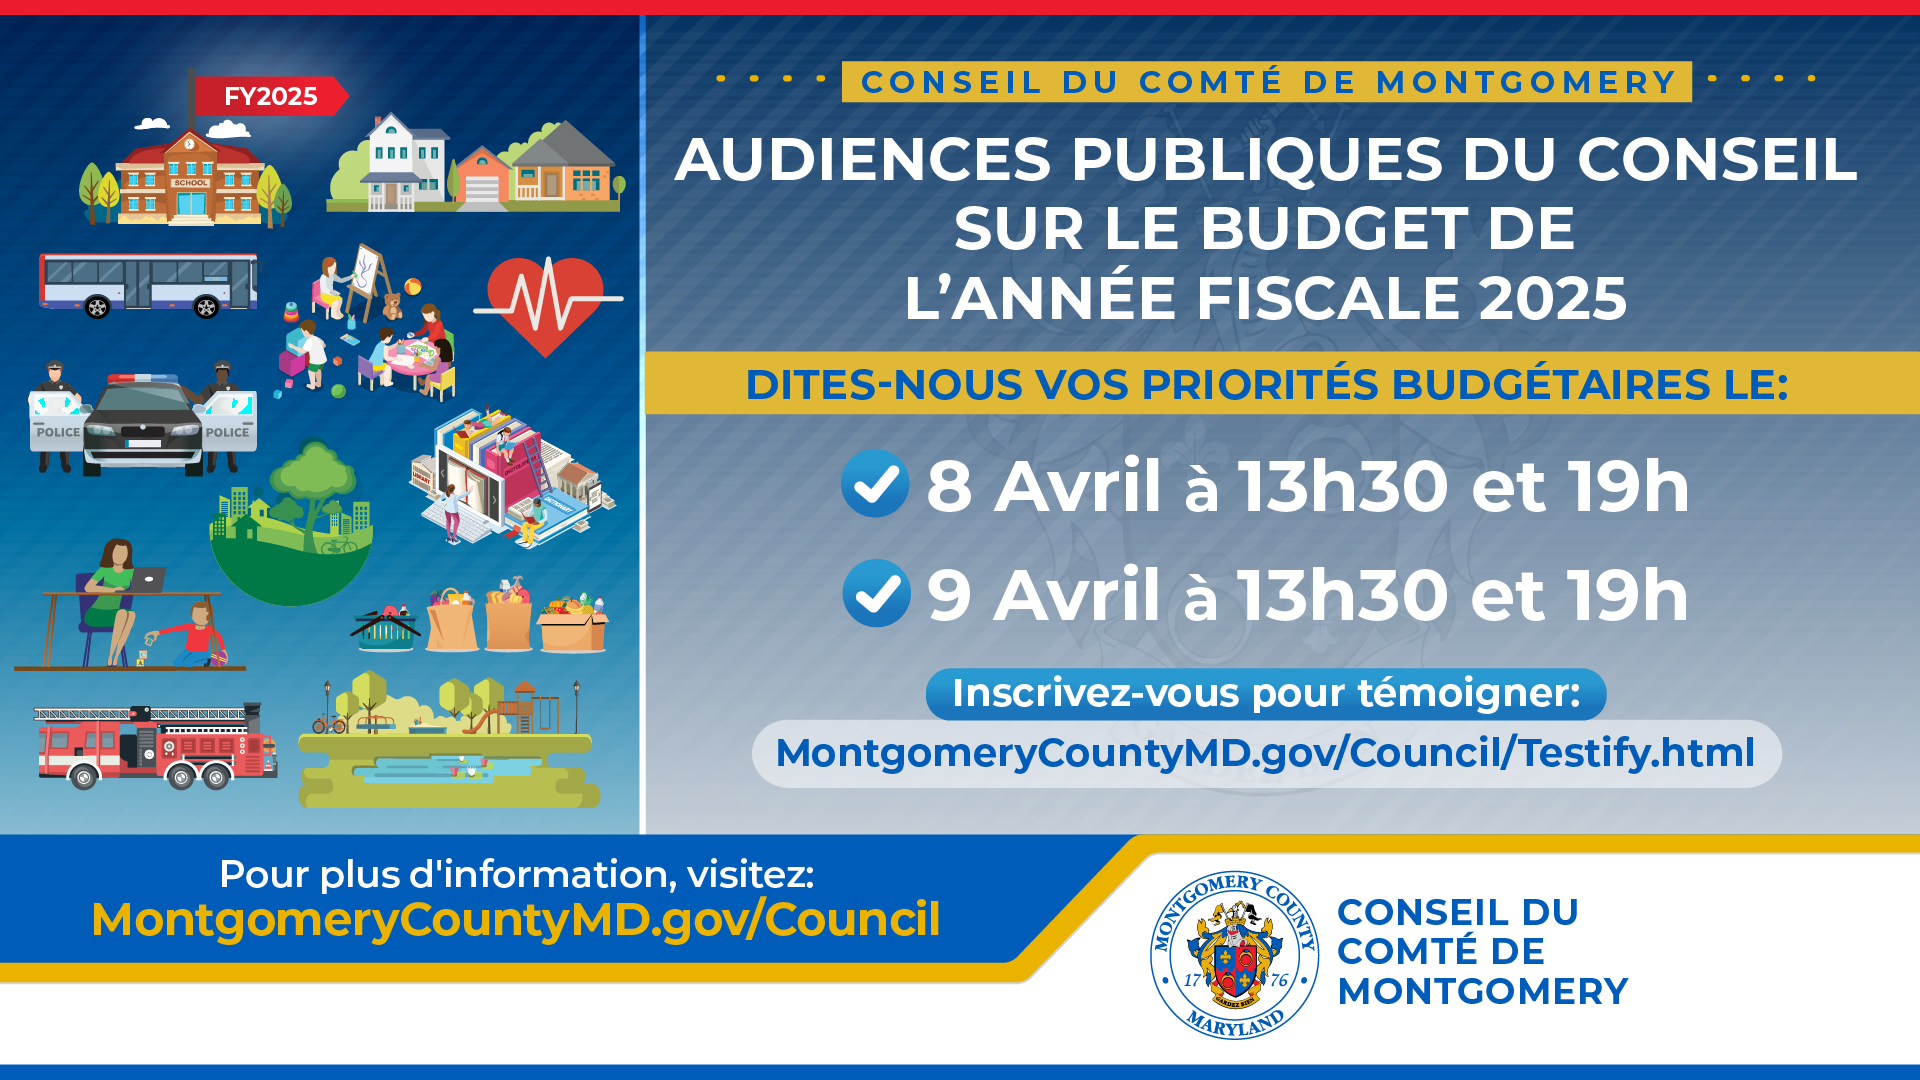 Audiences publiques sur le budget de fonctionnement de l'exercice 2025 les 8 et 9 avril à 13h30 et 19h00